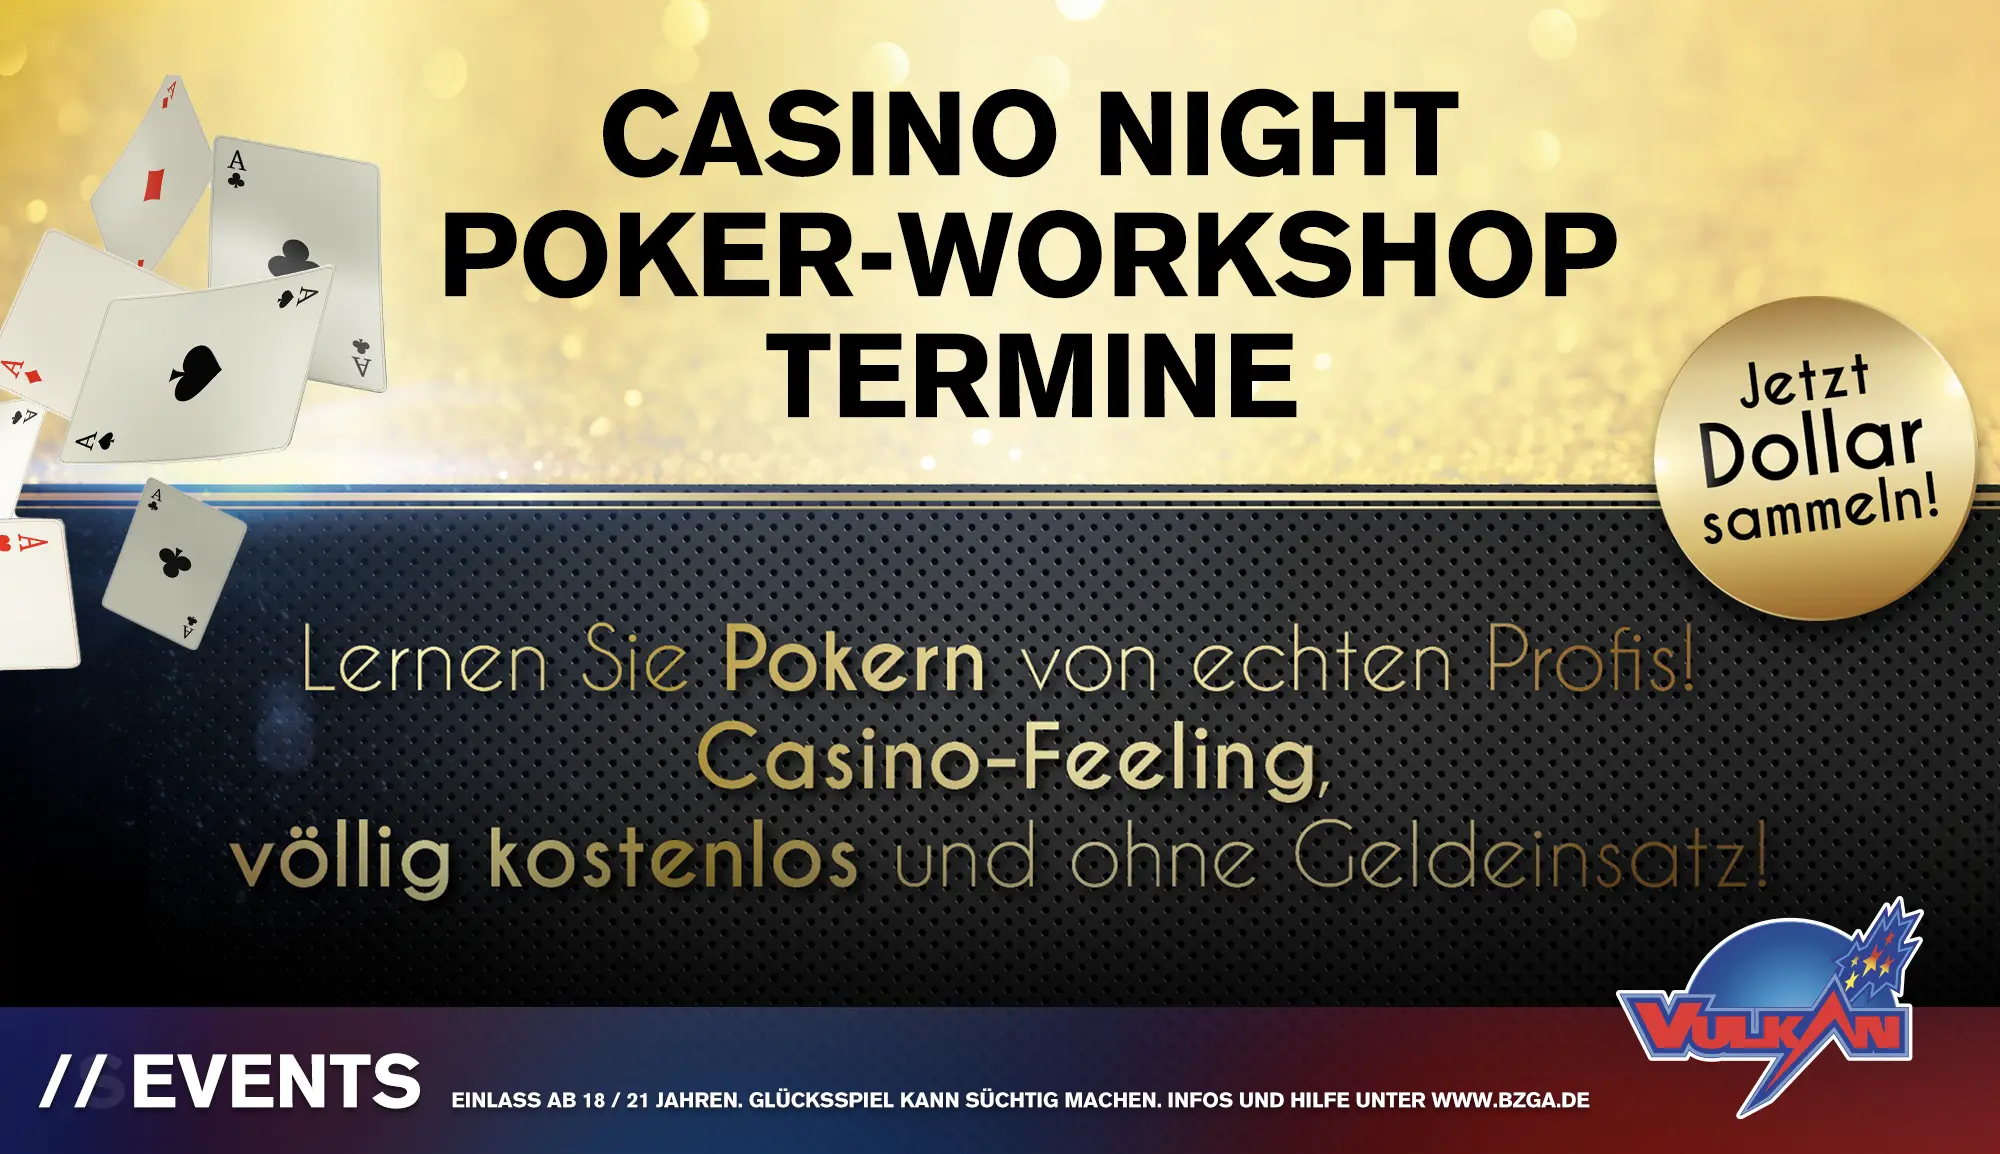 Poker Workshops in den Vulkan Spielhallen in Deutschland. Jetzt kostenlosen Teilnahme-Coupon sichern